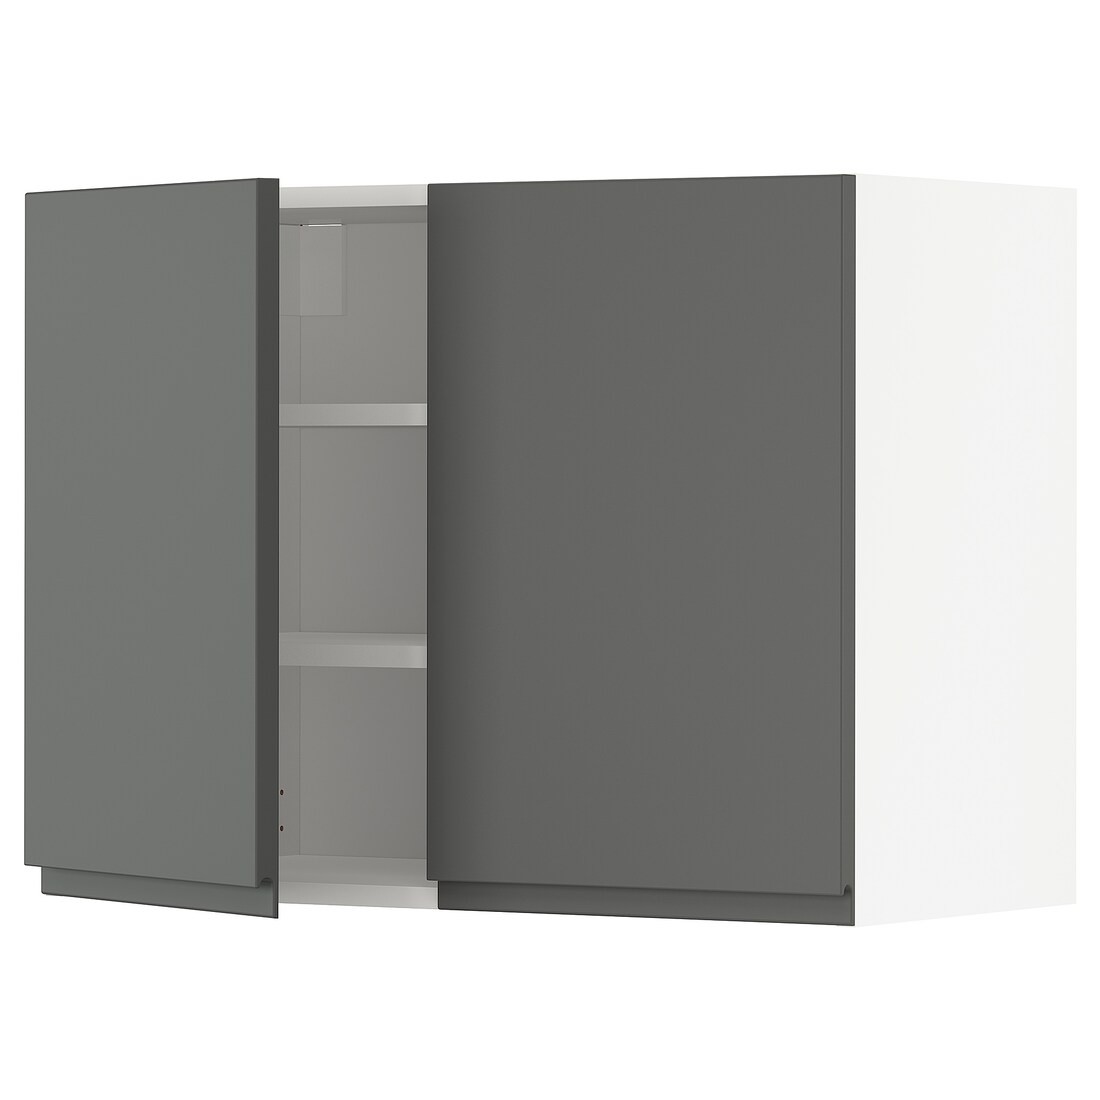 METOD МЕТОД Навесной шкаф с полками / 2 дверцы, белый / Voxtorp темно-серый, 80x60 см